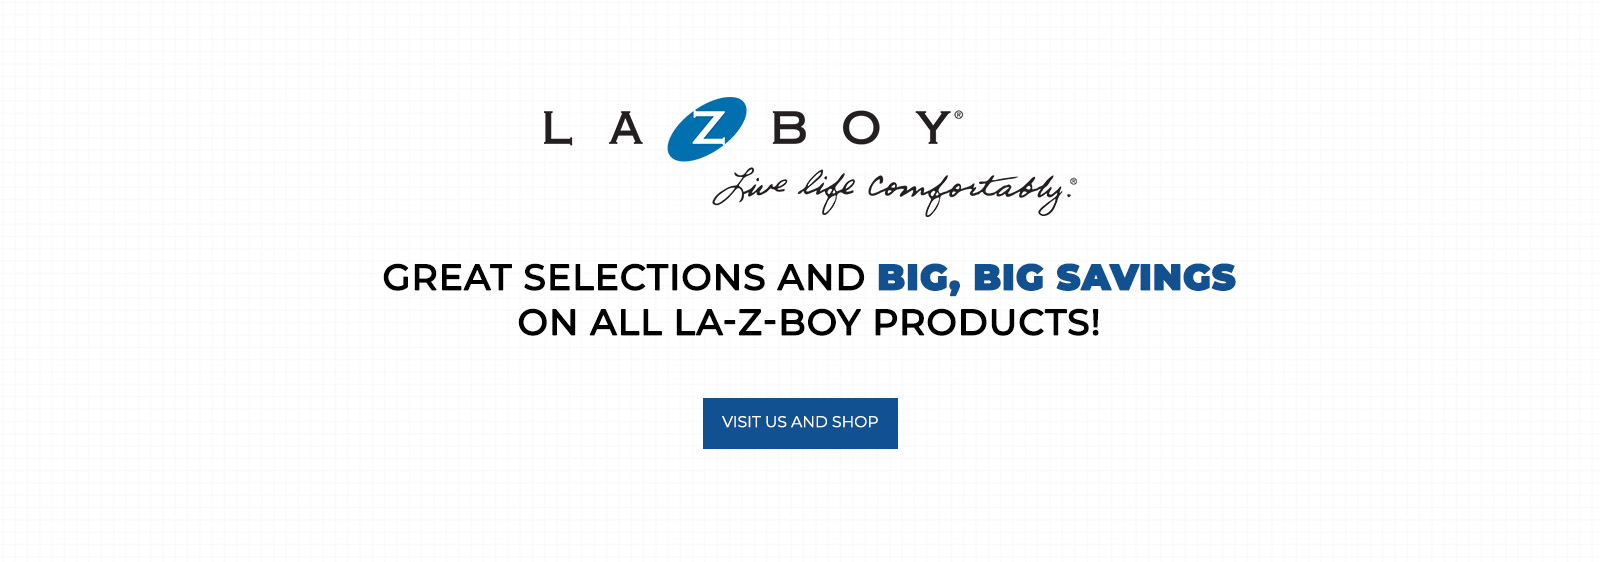 LaZBoy-Banner 9-22-21